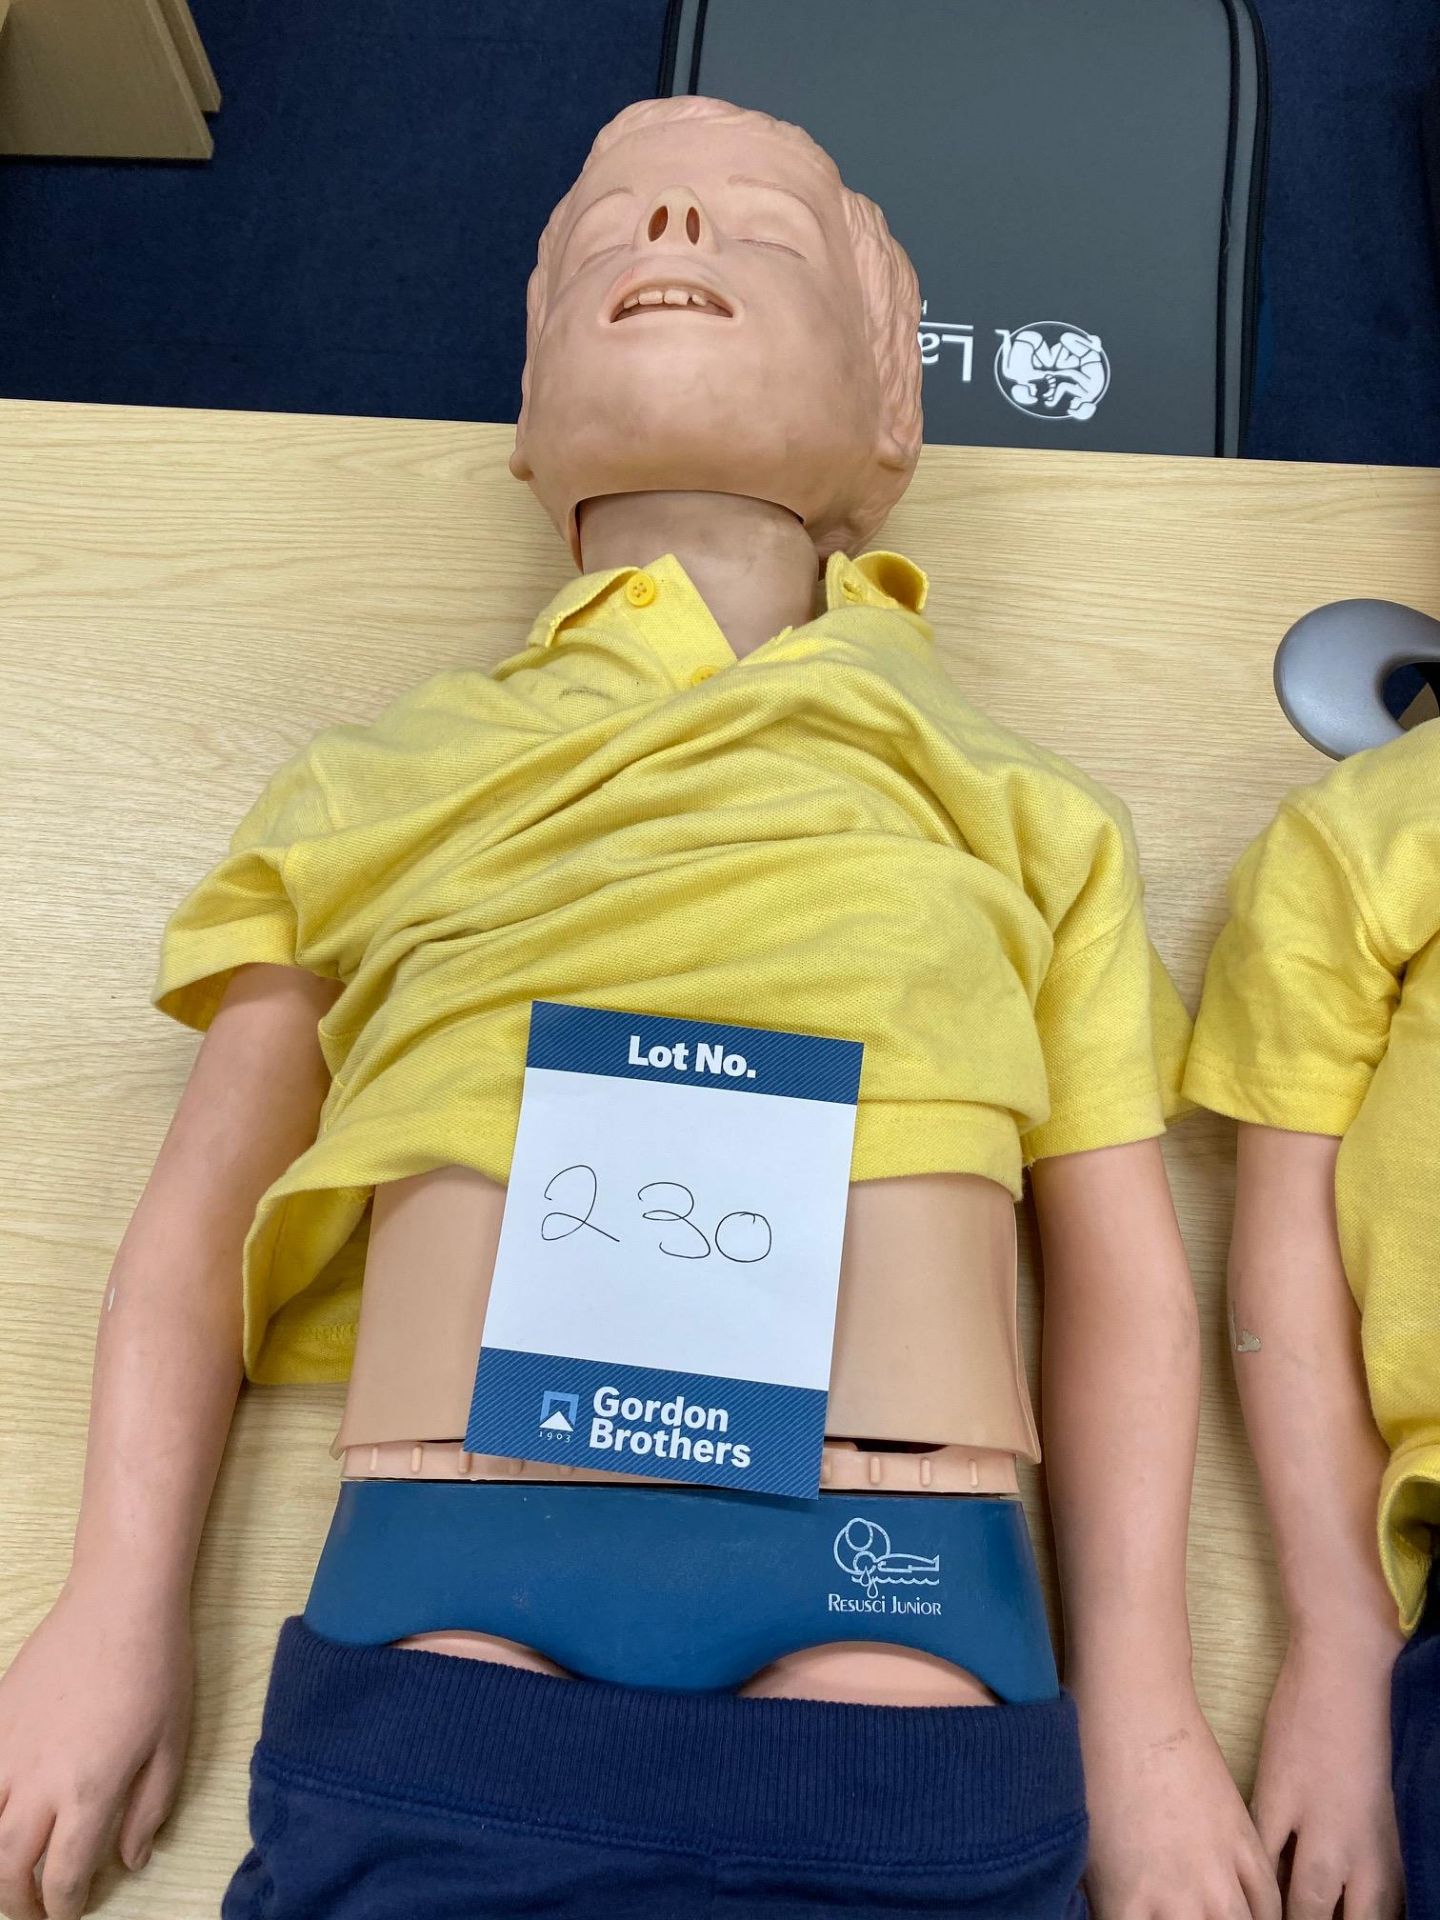 Two Laerdal junior resuscitations mannequins - Image 2 of 3